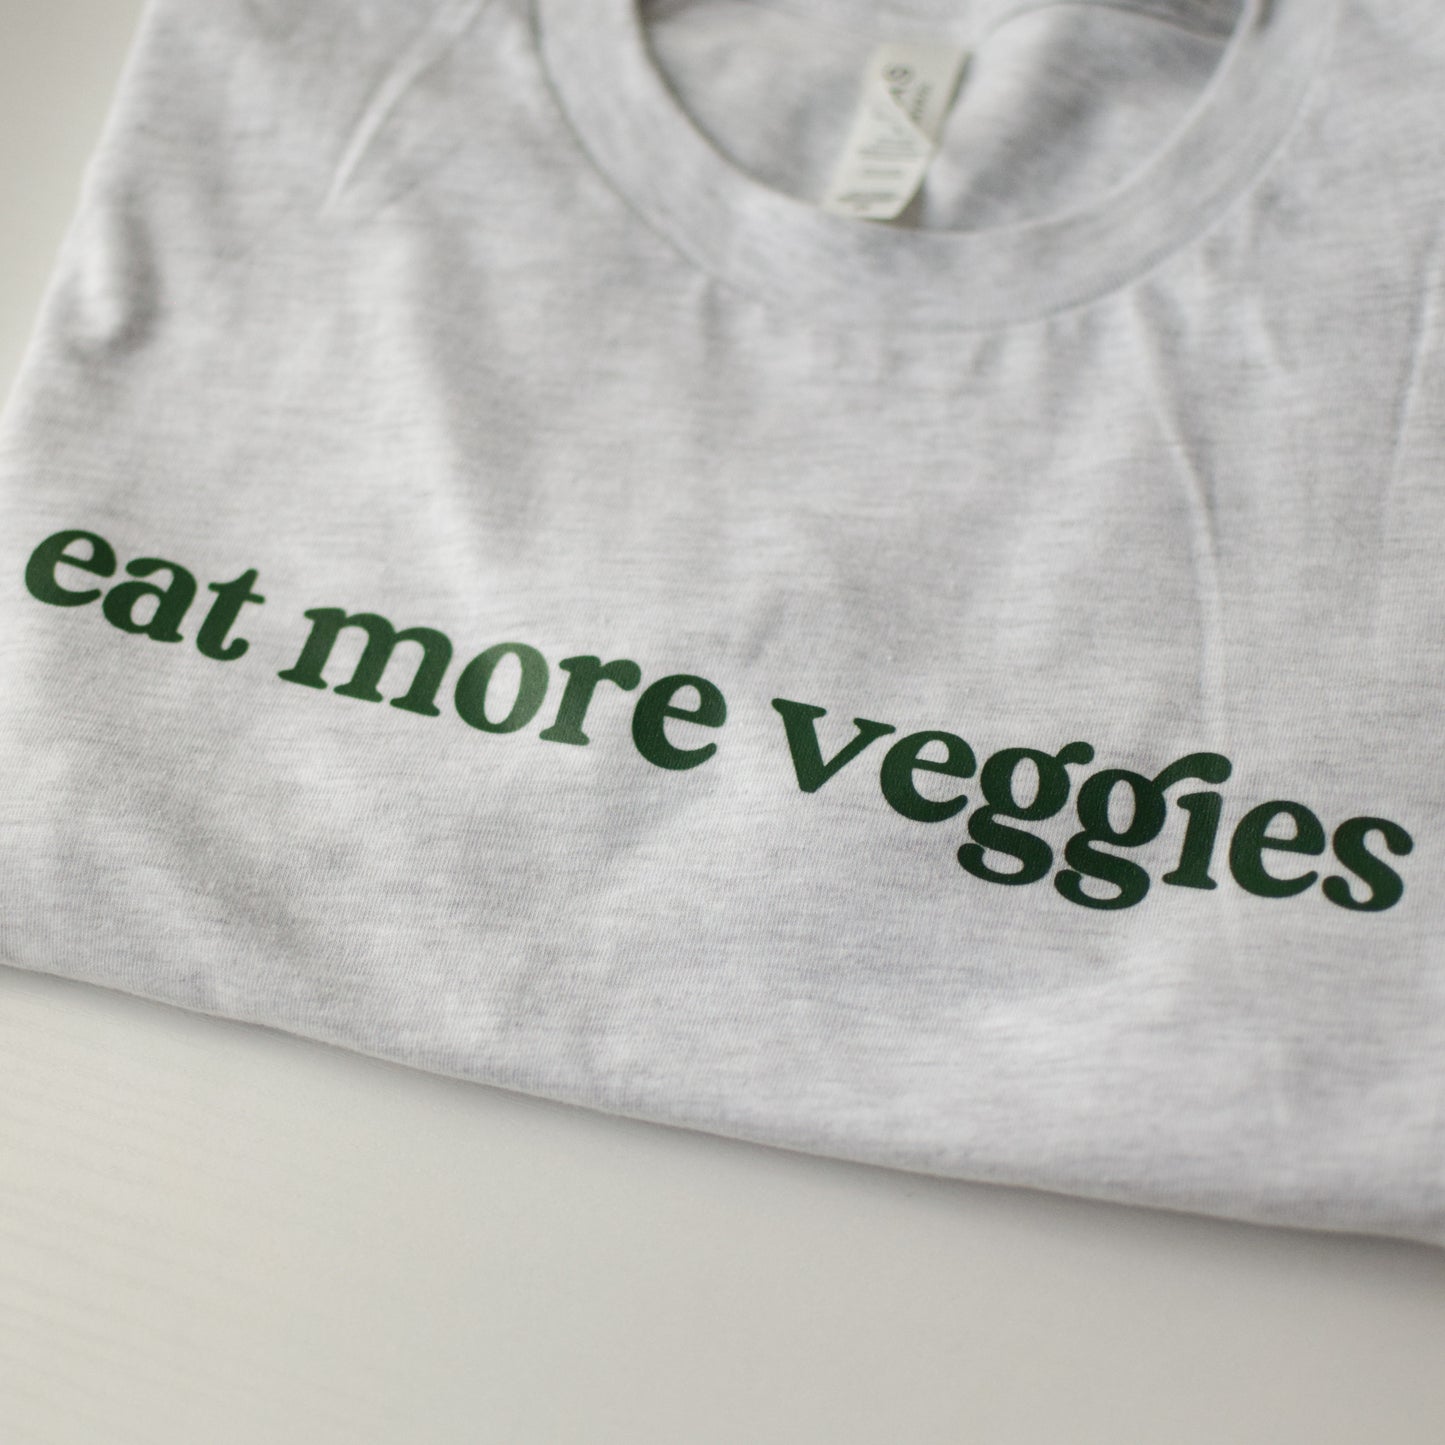 Eat More Veggies Tee